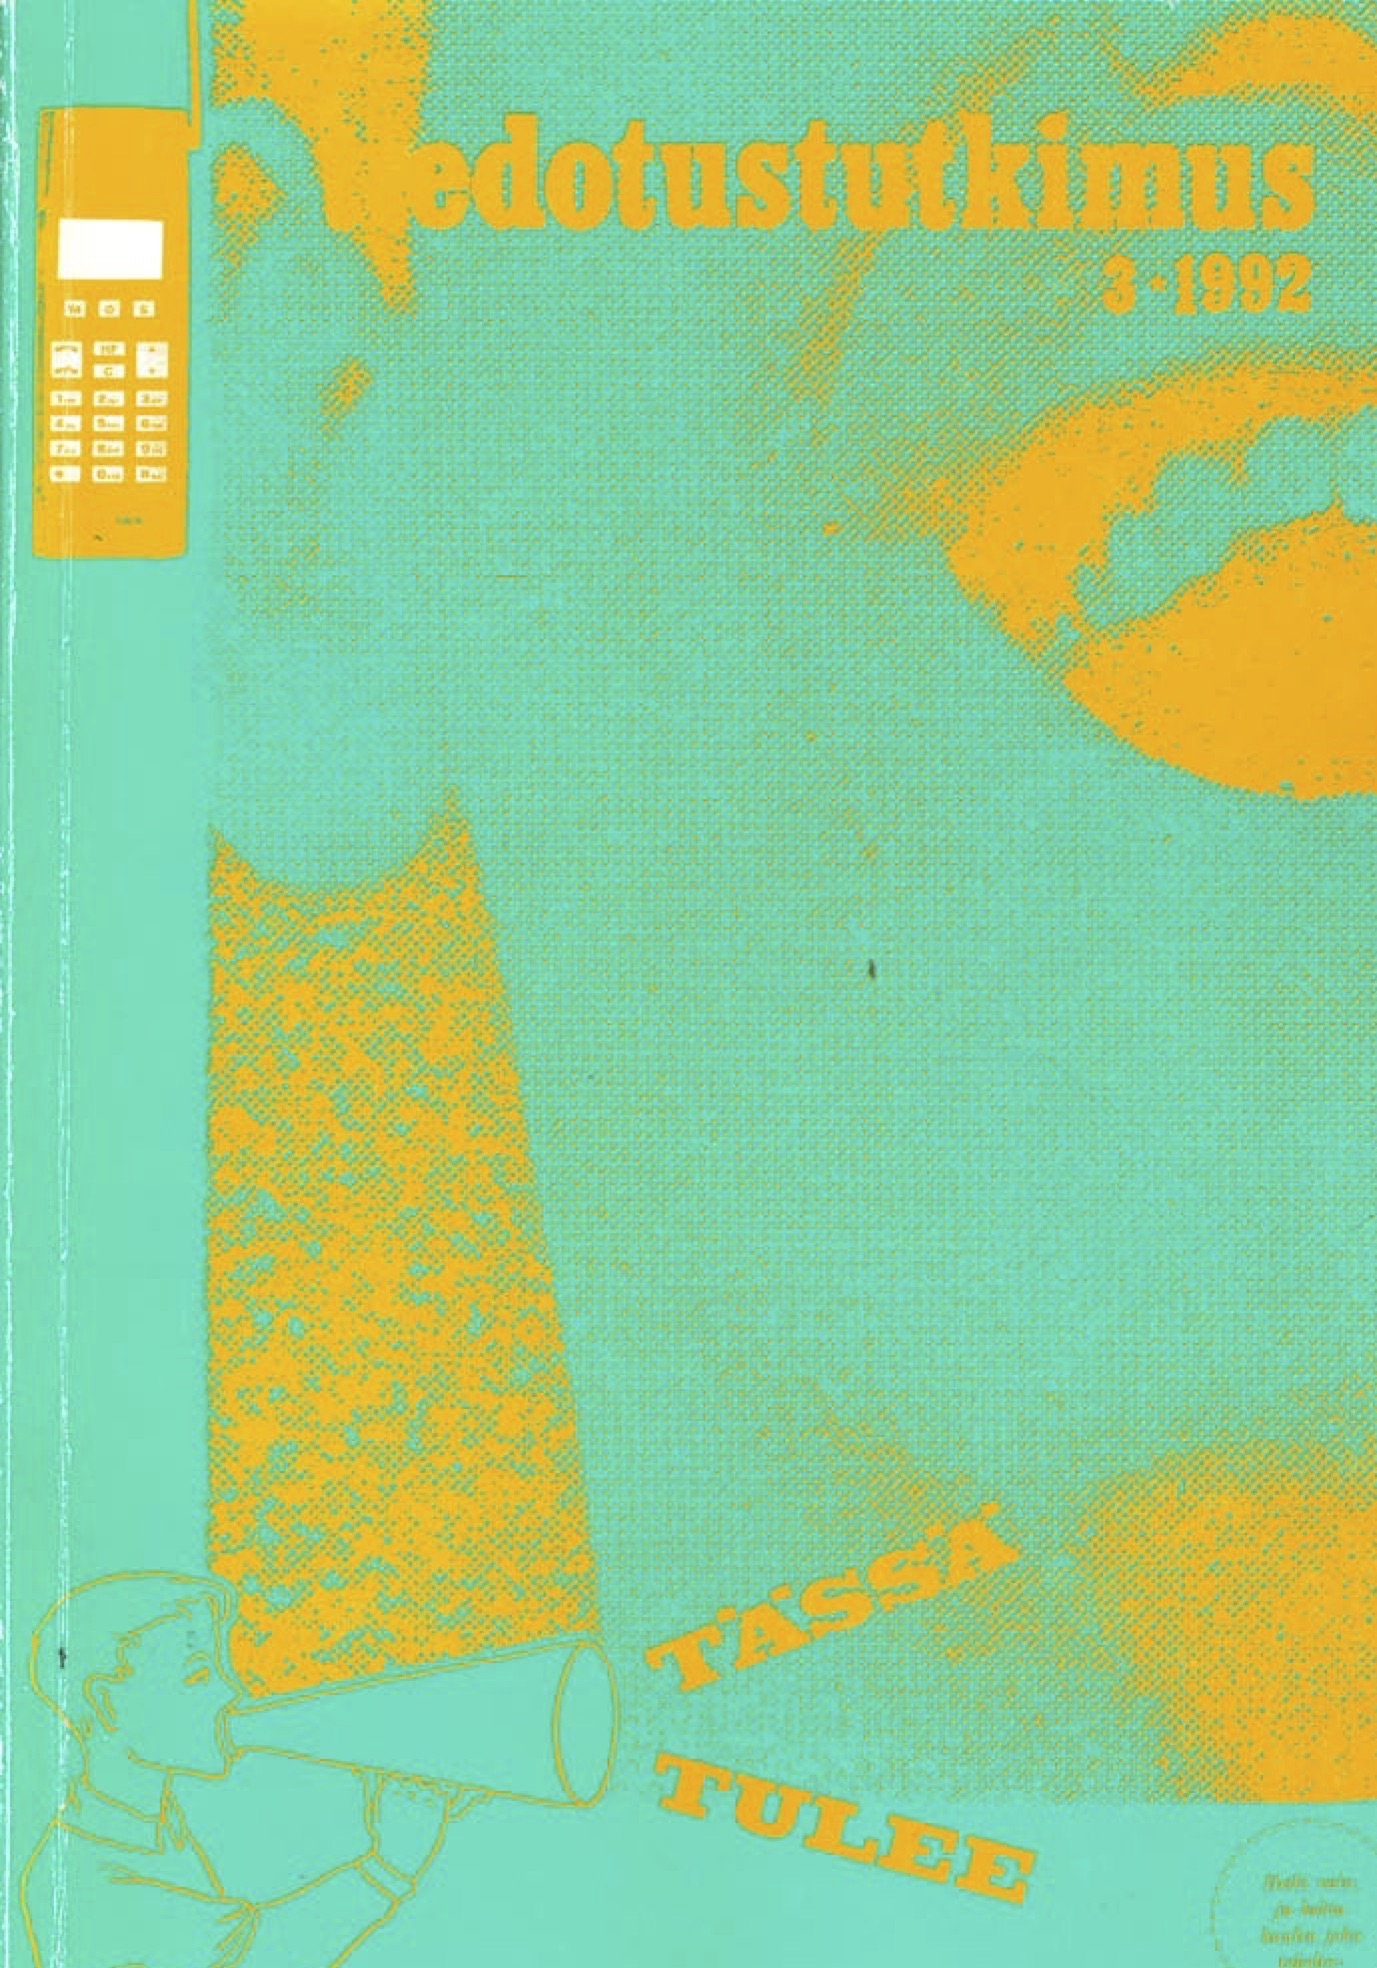 					Näytä Vol 15 Nro 3 (1992)
				